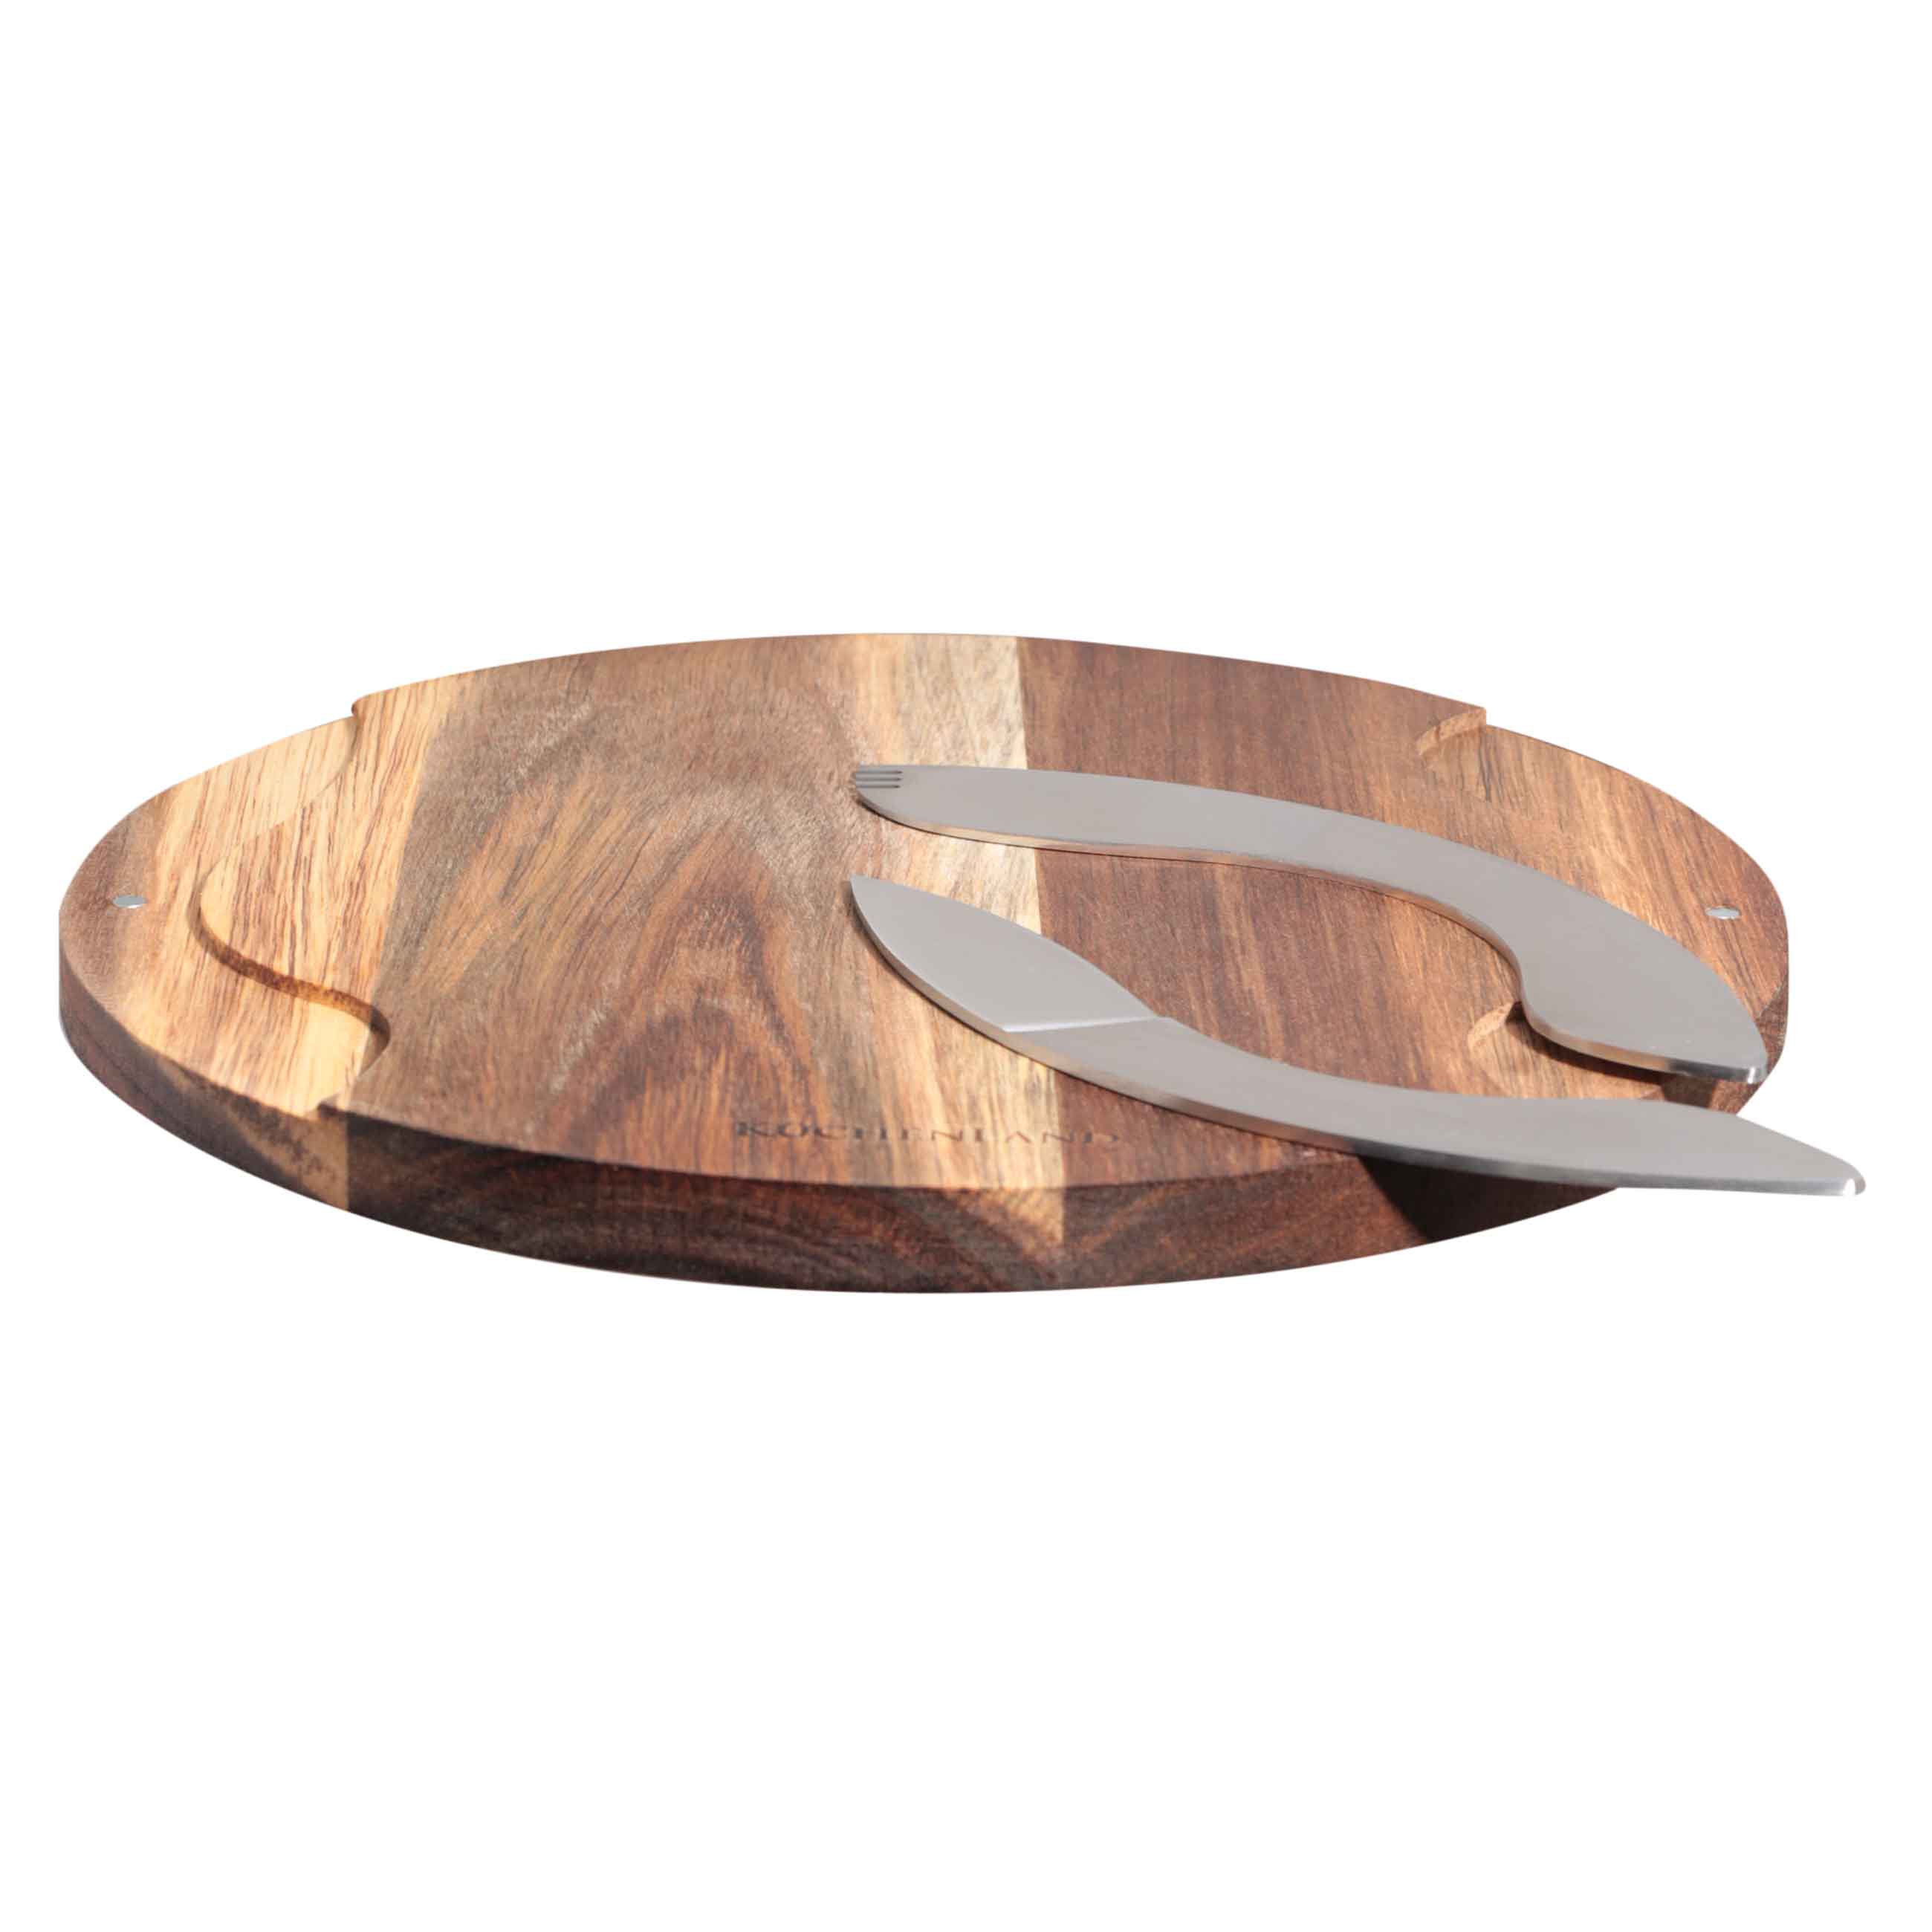 Блюдо для закусок, 25 см, с ножом и вилкой, дерево/сталь, Noble tree изображение № 2